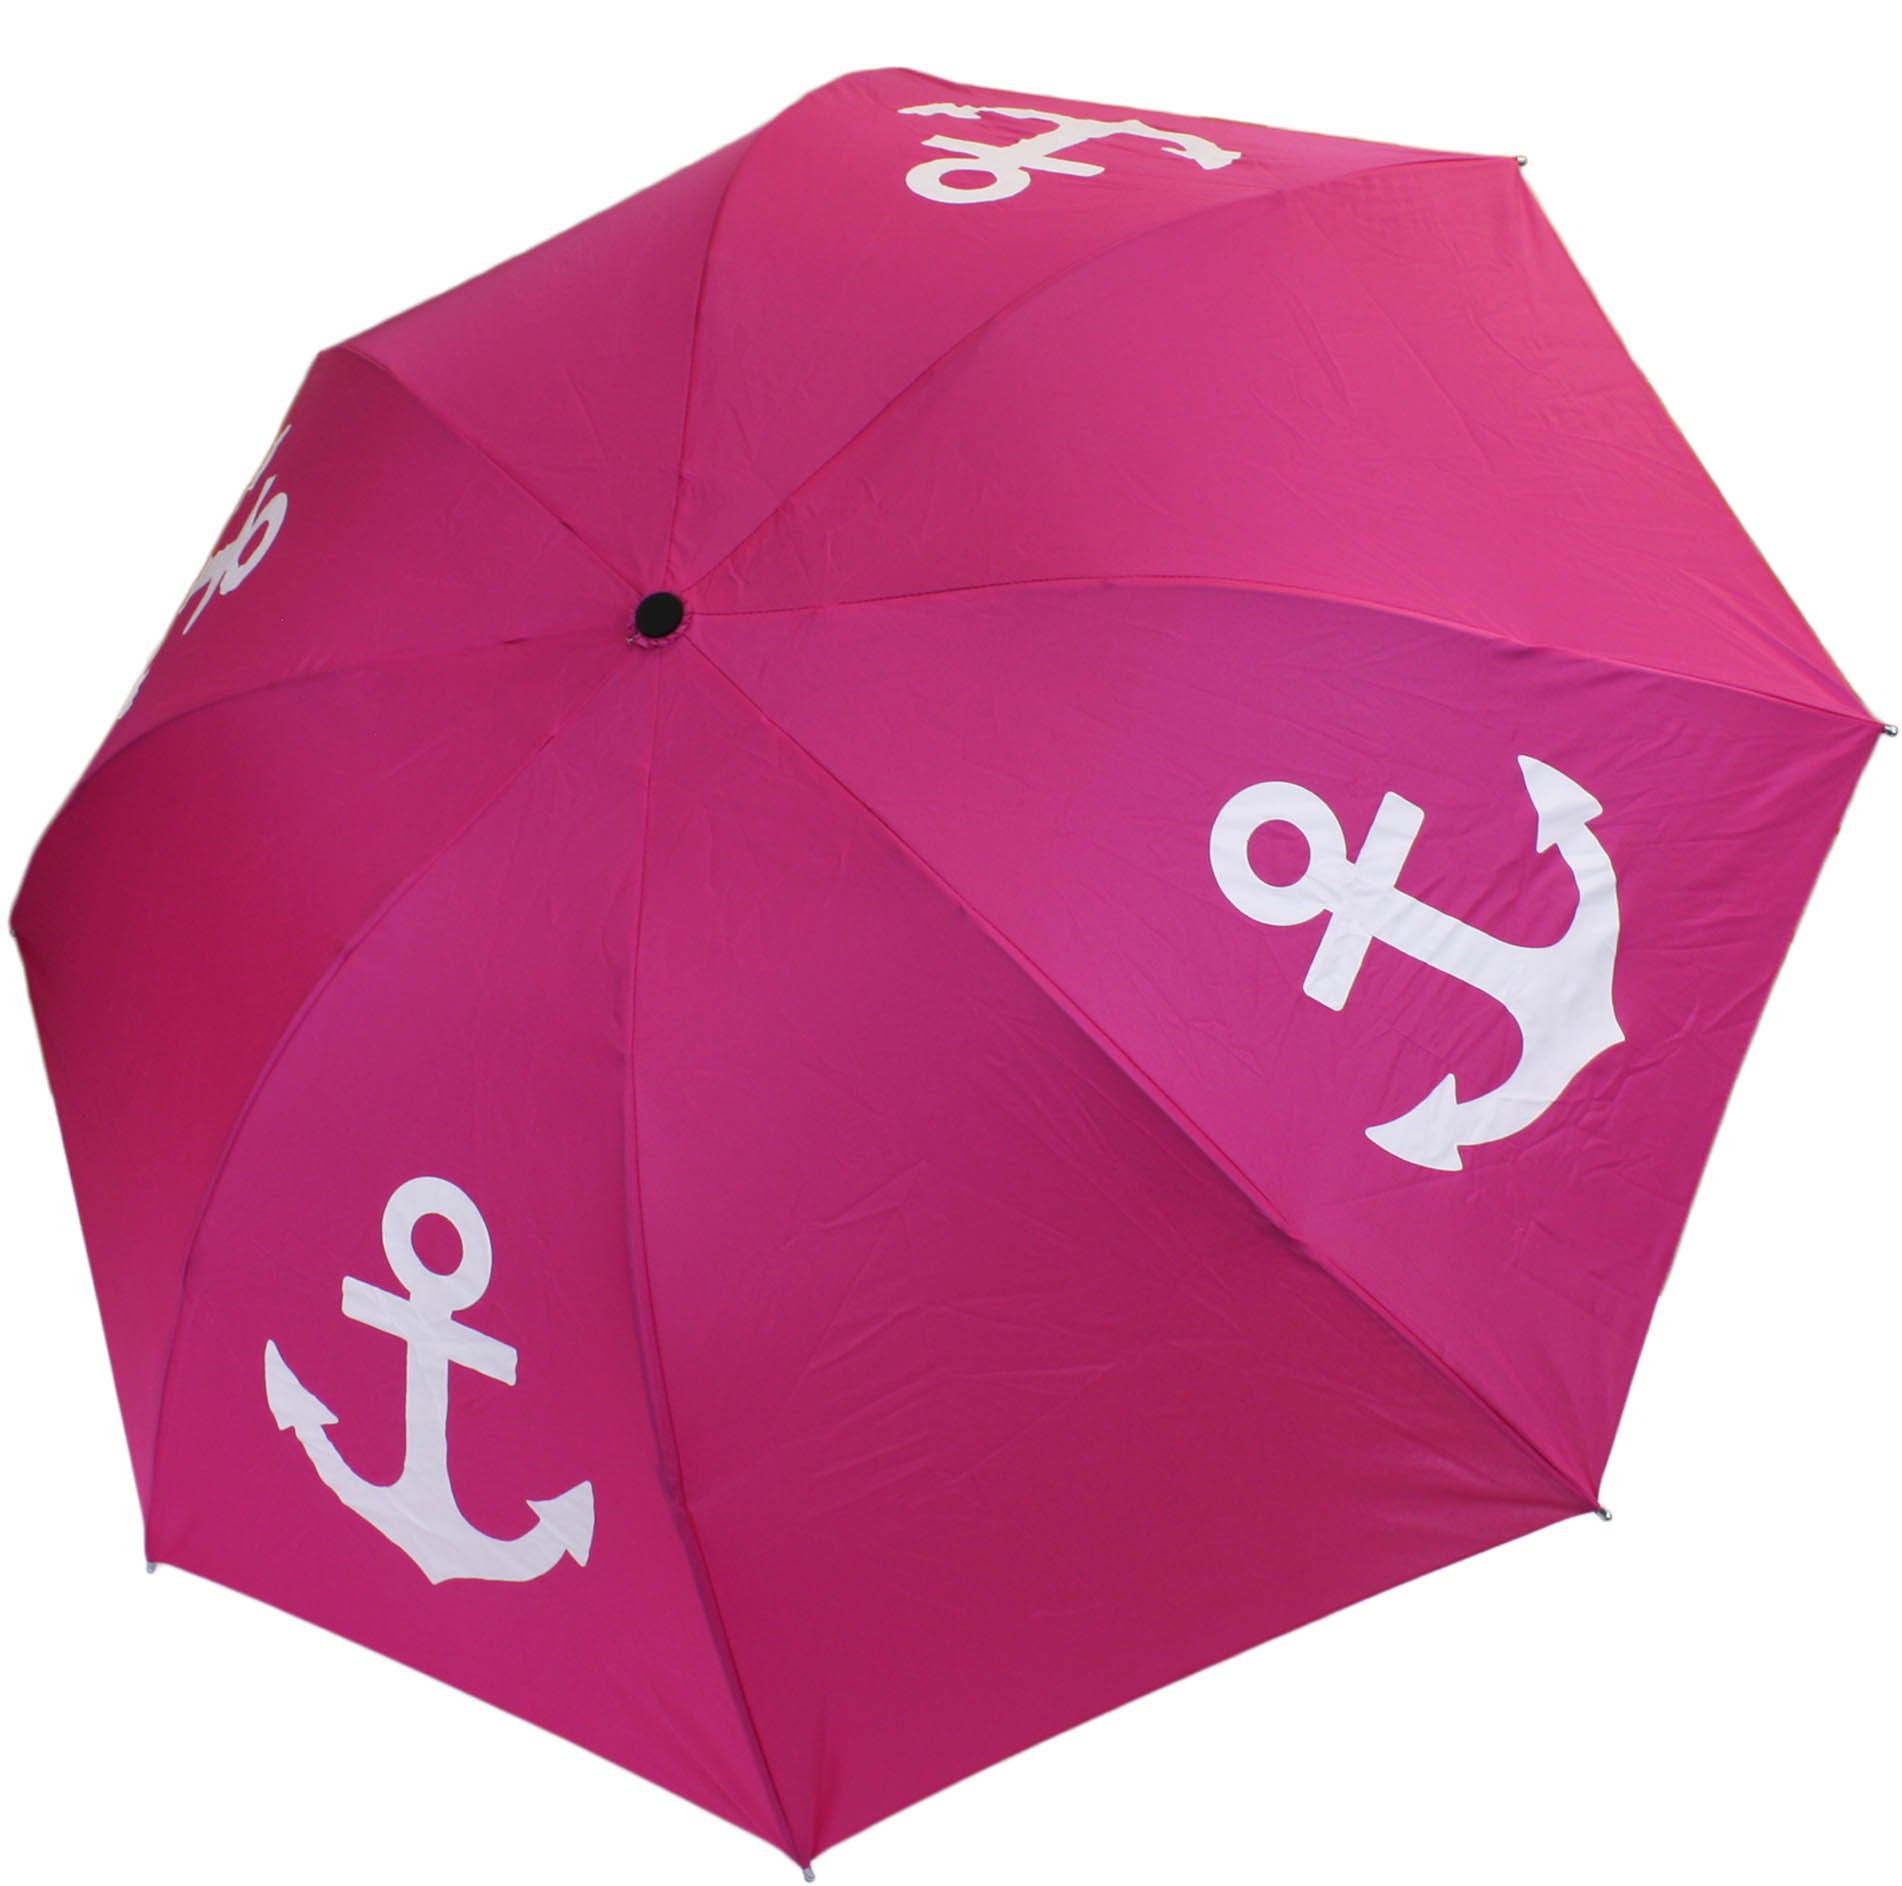 Sonia Originelli Taschenschirm Maritim Anker Streifen Regenschirm Schutz Farbe Grau